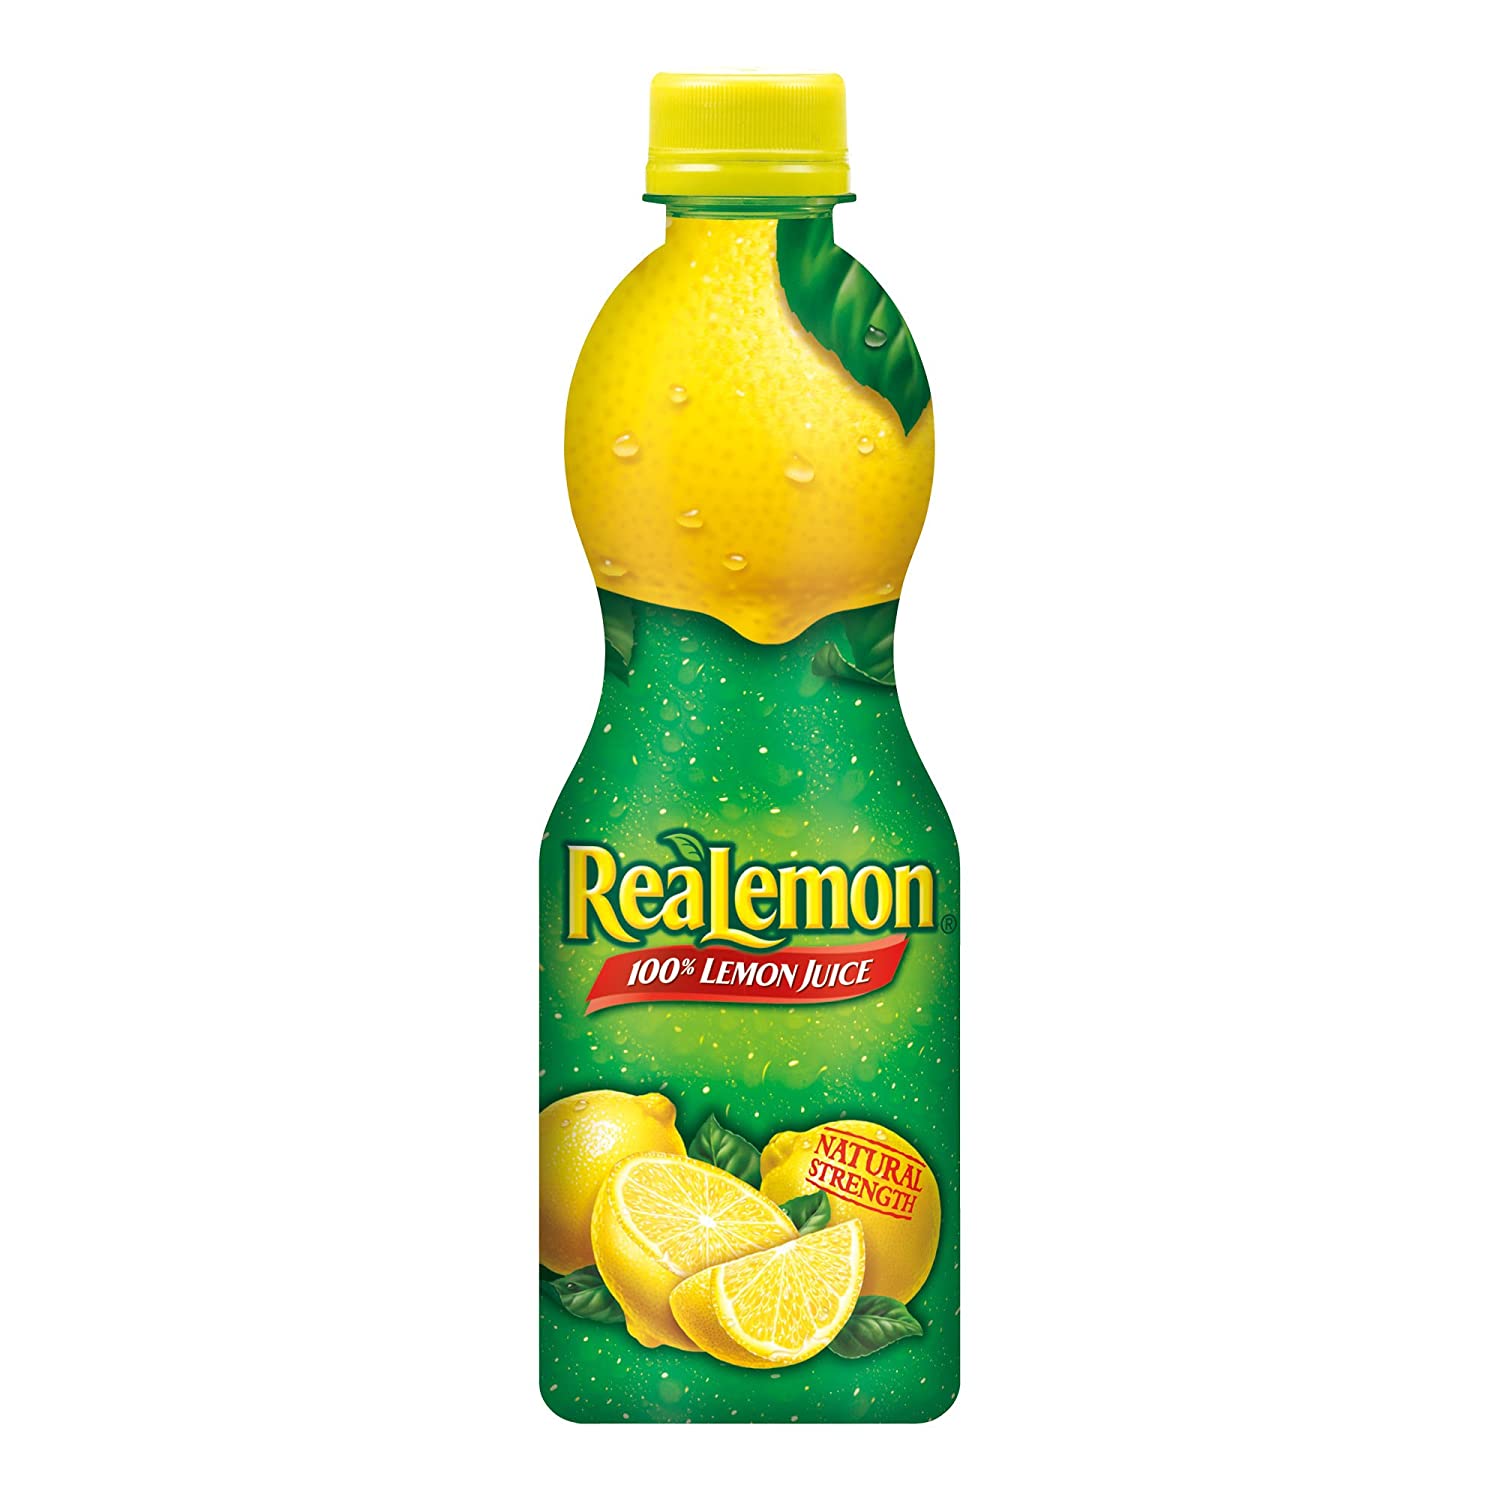 Sebakeng se setle sa asene ea raese ReaLemon 100% Lemon ea lero